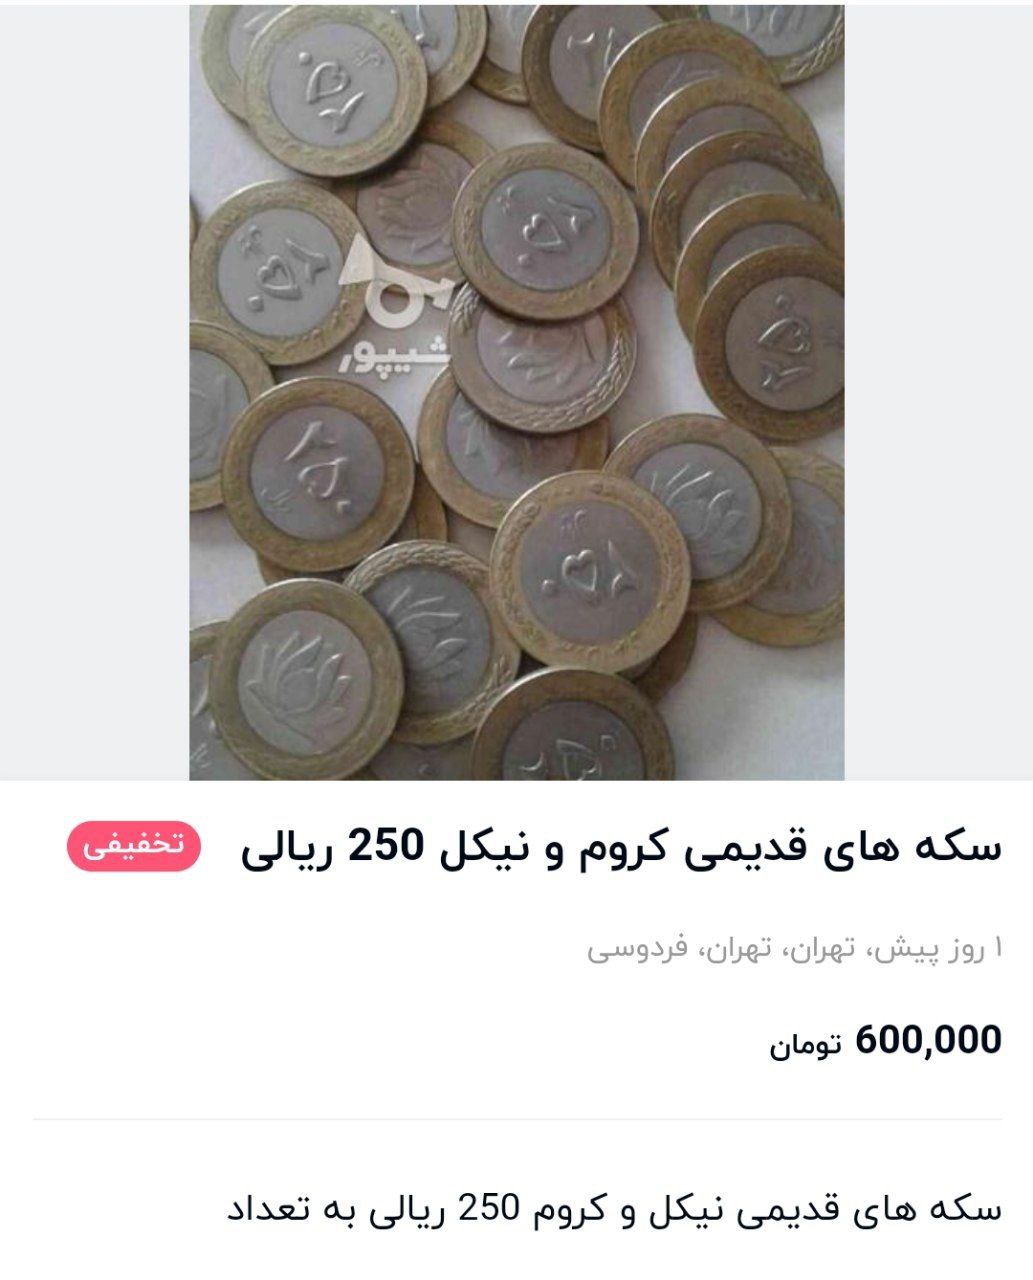 بازار عجیب خرید و فروش سکه های قدیمی؛ از ۶۰۰ هزار تومان تا ۵۰ میلیون تومان! 